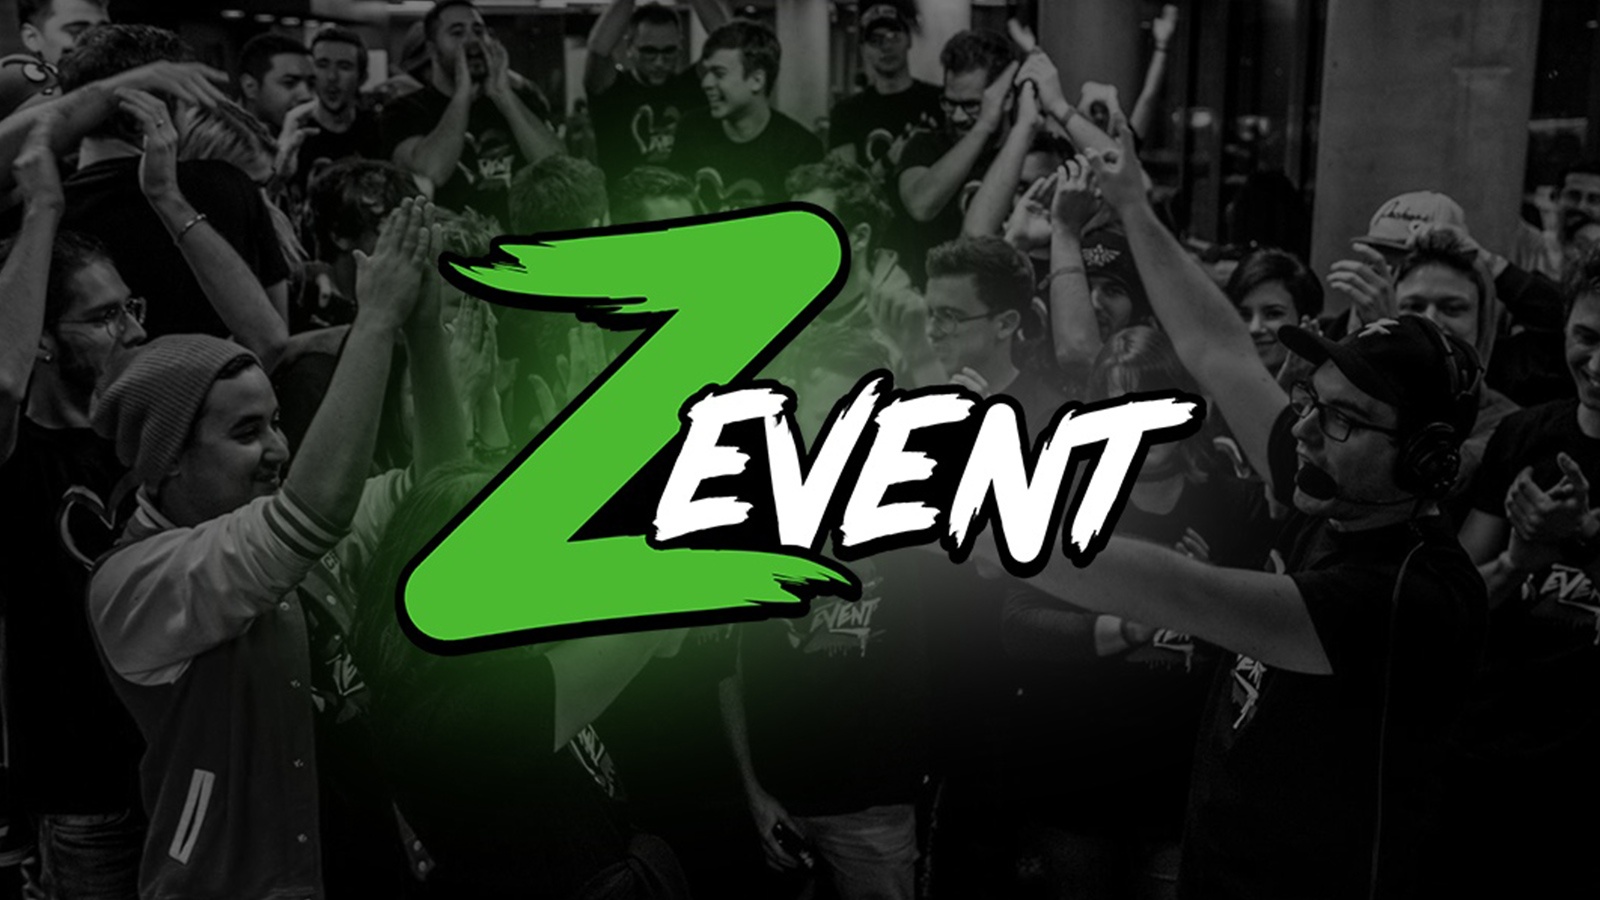 Le Z EVENT : un succès grandissant !